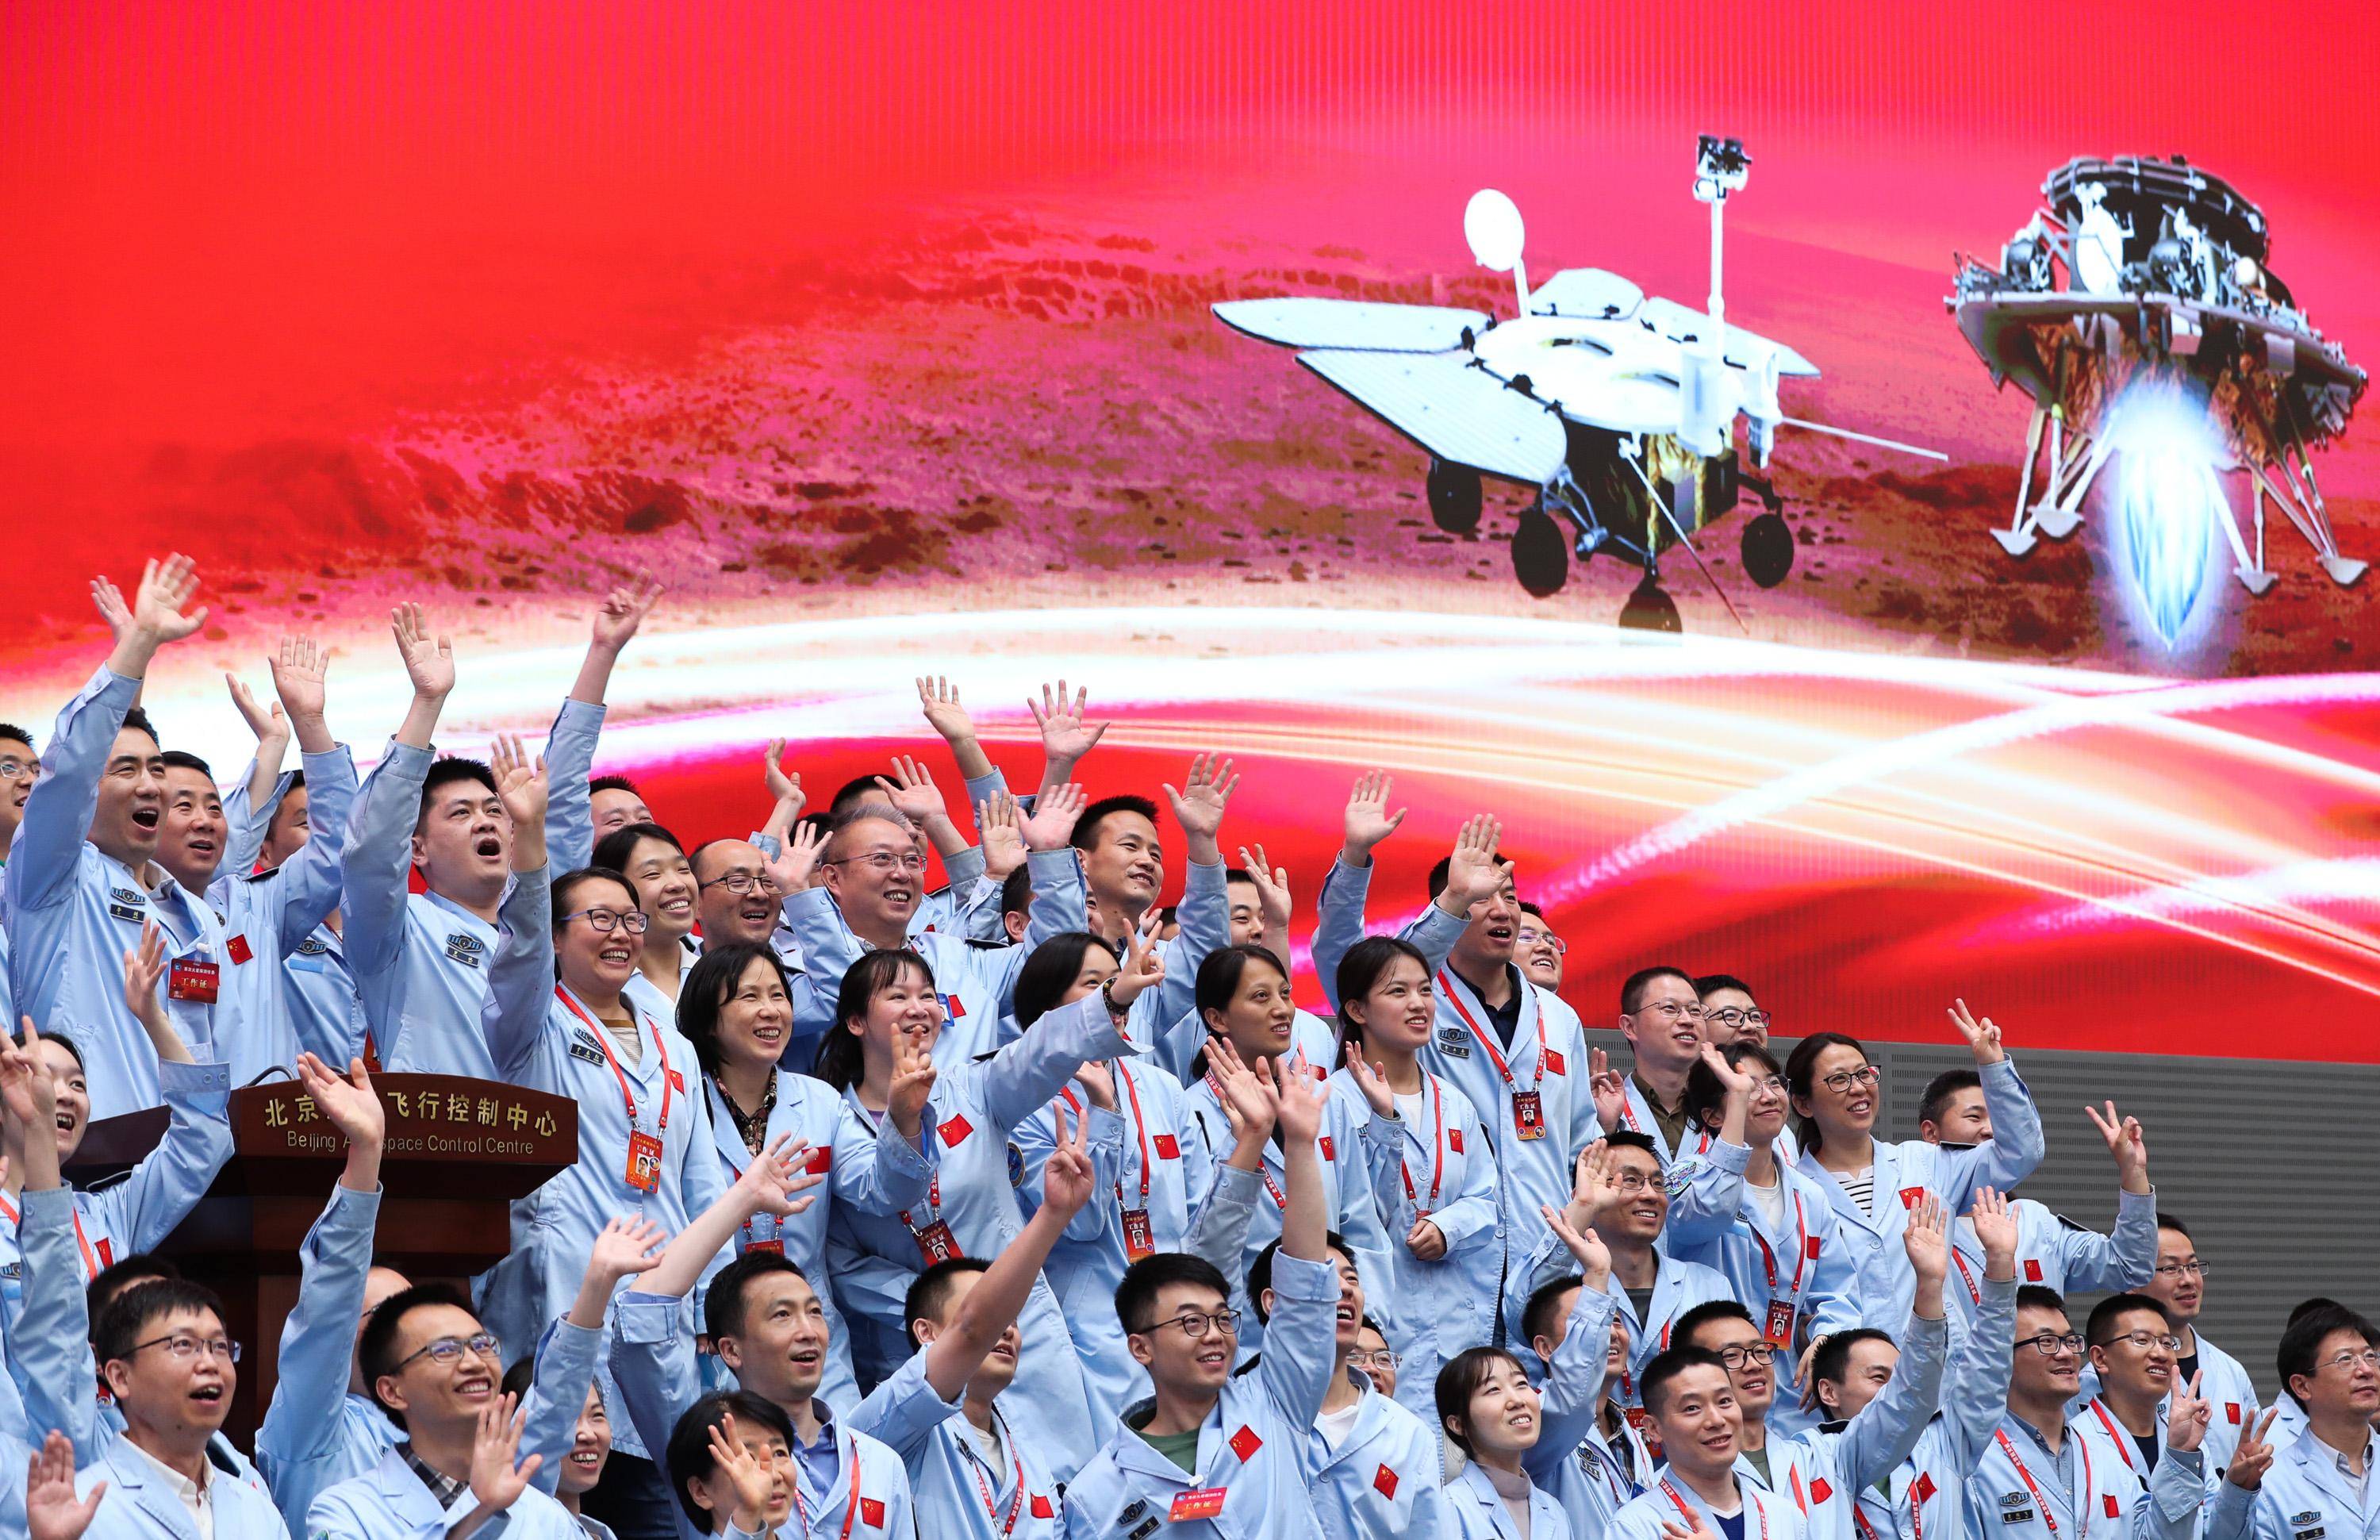 (图文互动)航天强国征程上的青春之歌——记北京航天飞行控制中心青年